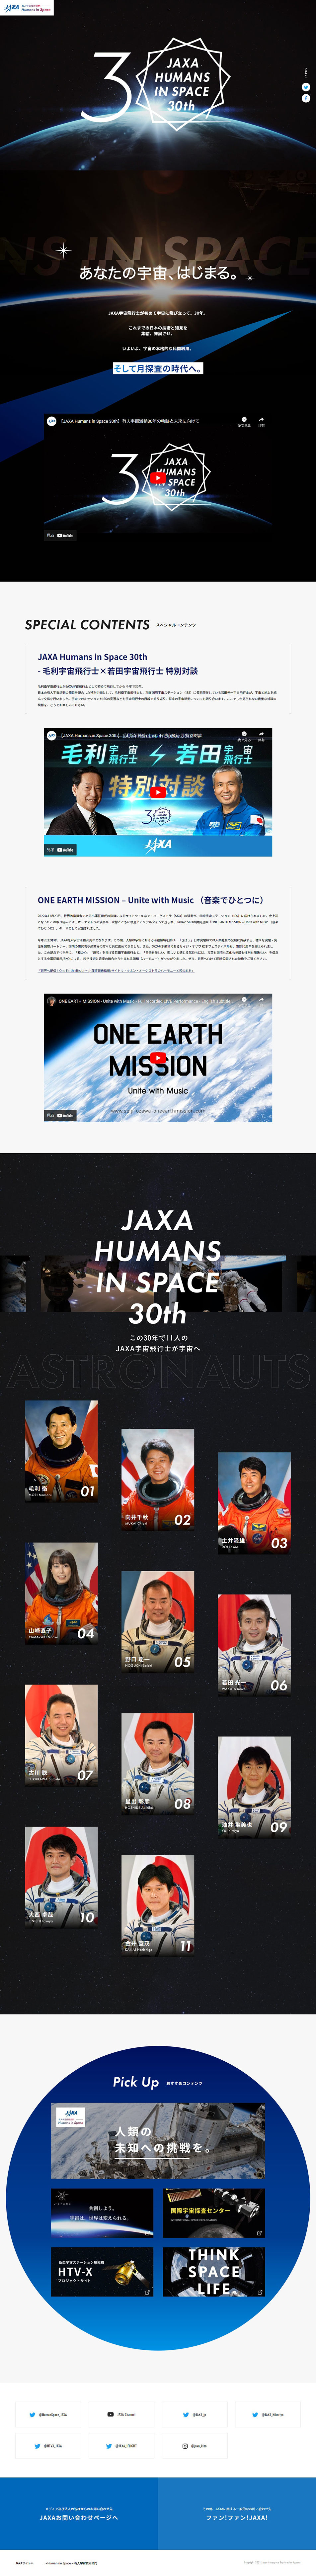 JAXA有人宇宙活動 30周年記念特設サイト_pc_1